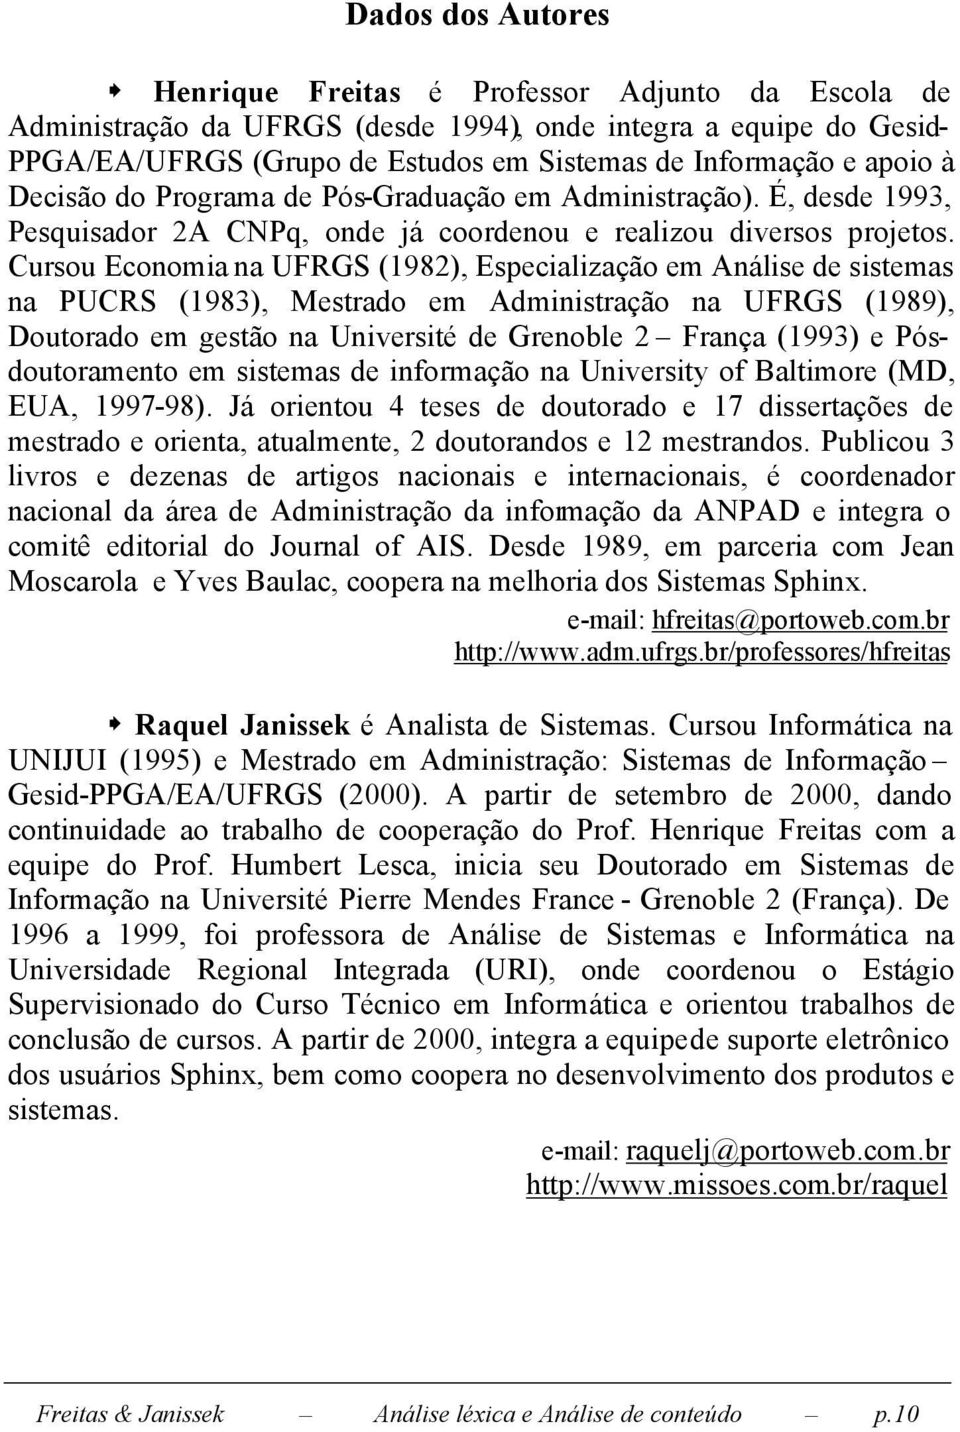 Cursou Economia na UFRGS (1982), Especialização em Análise de sistemas na PUCRS (1983), Mestrado em Administração na UFRGS (1989), Doutorado em gestão na Université de Grenoble 2 França (1993) e